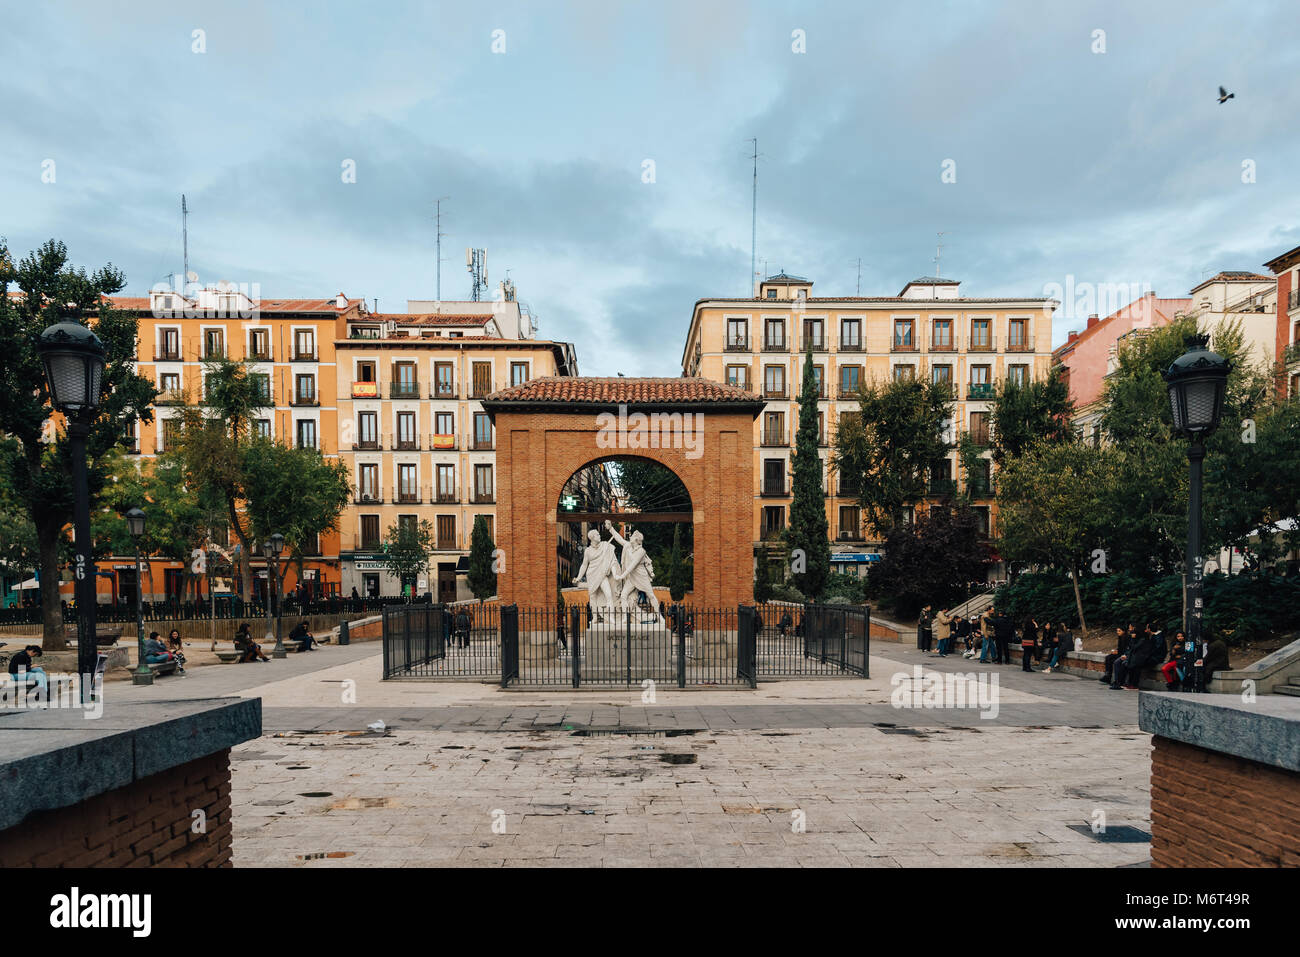 Madrid, Spagna - 3 Novembre 2017: Dos de Mayo Square nel quartiere di Malasaña in Madrid. Malasaña è uno dei quartieri più alla moda di Madrid, ben kn Foto Stock